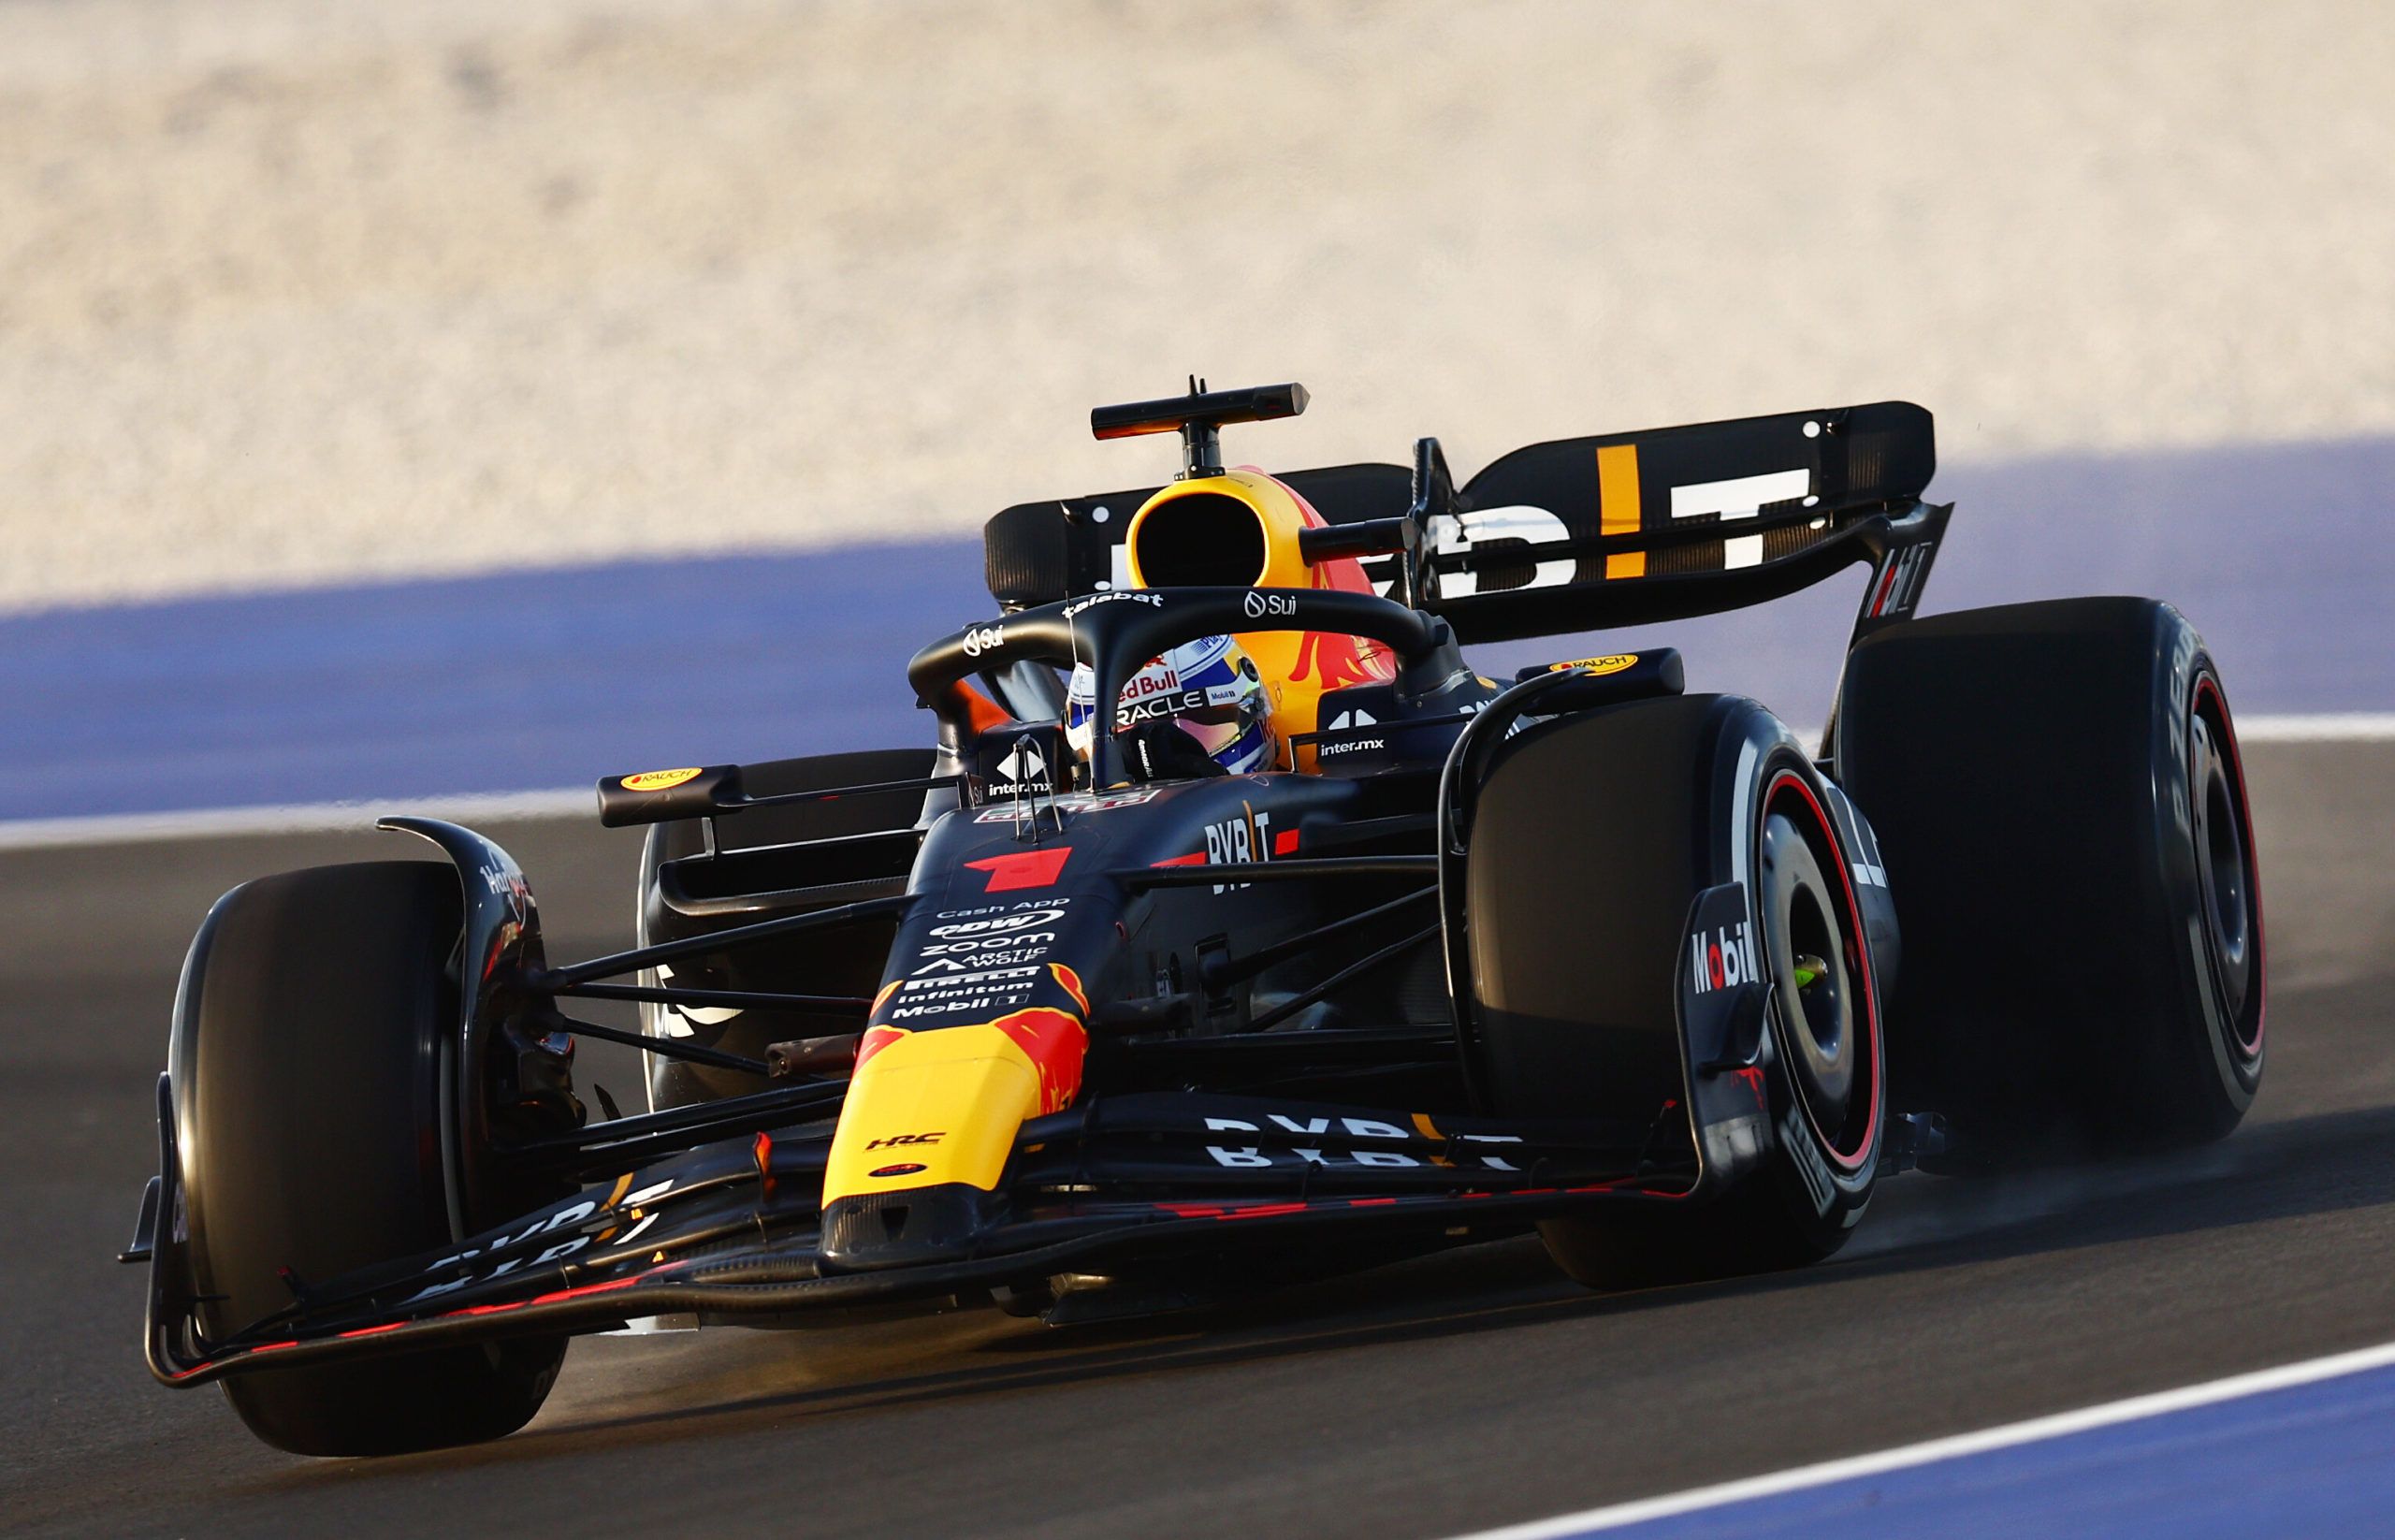 Qatar GP, F1, Max Verstappen